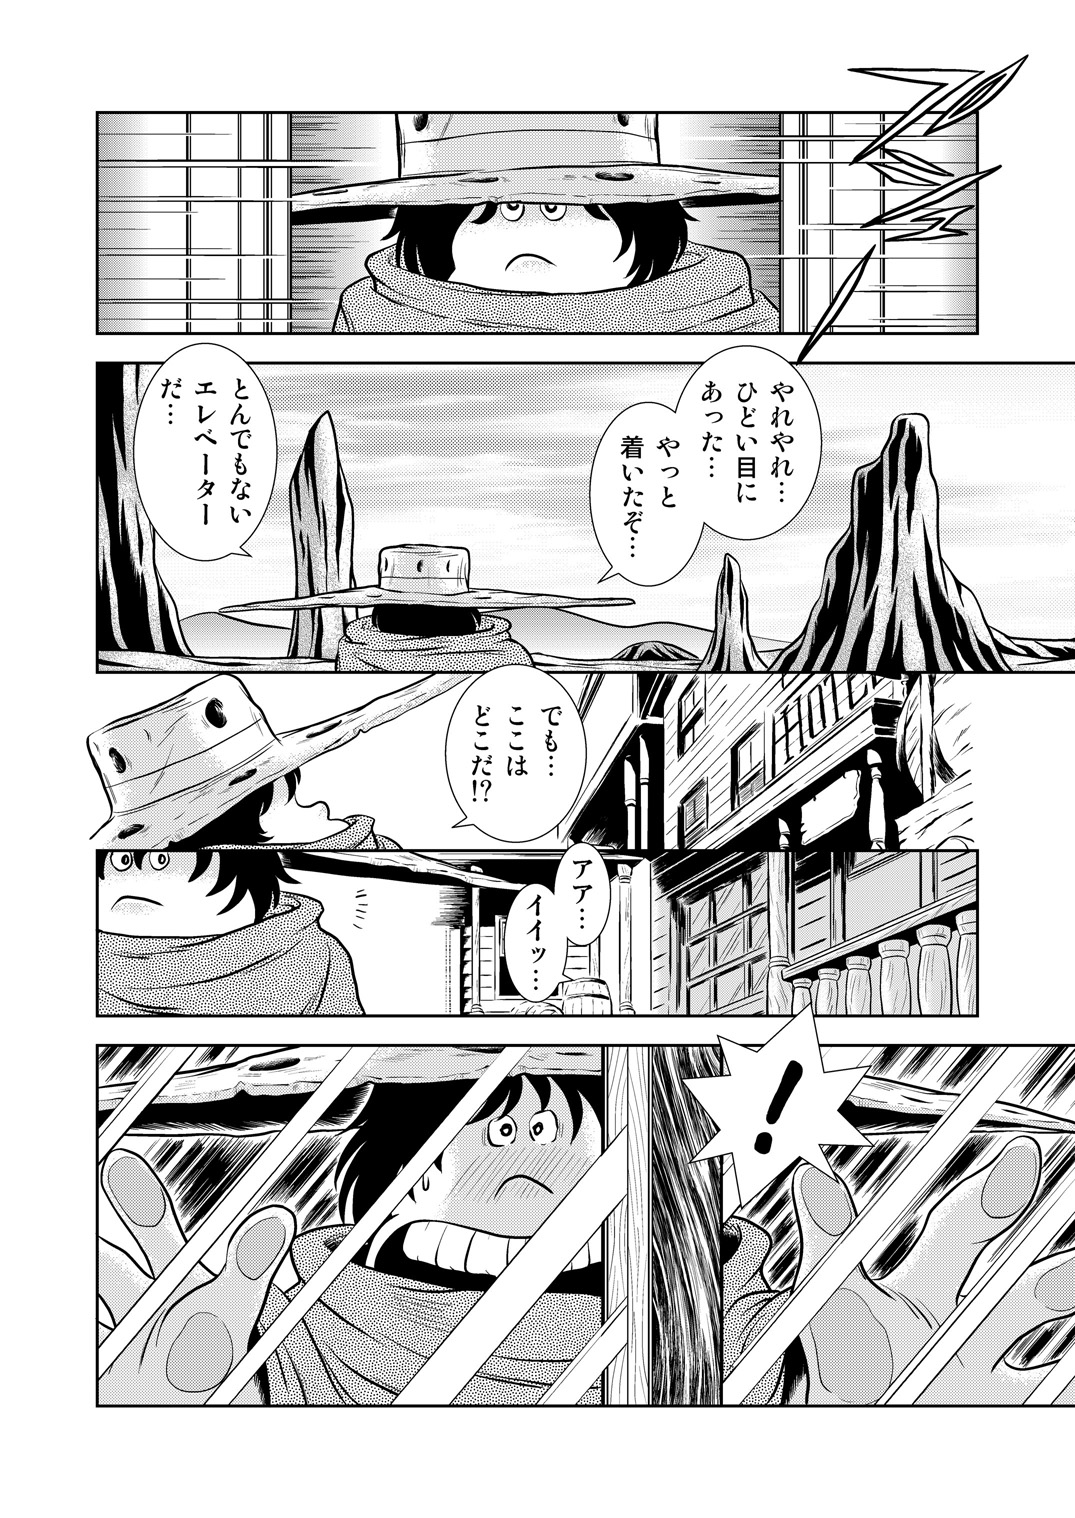 [かぐや姫] Maetel Story 8 (銀河鉄道999)